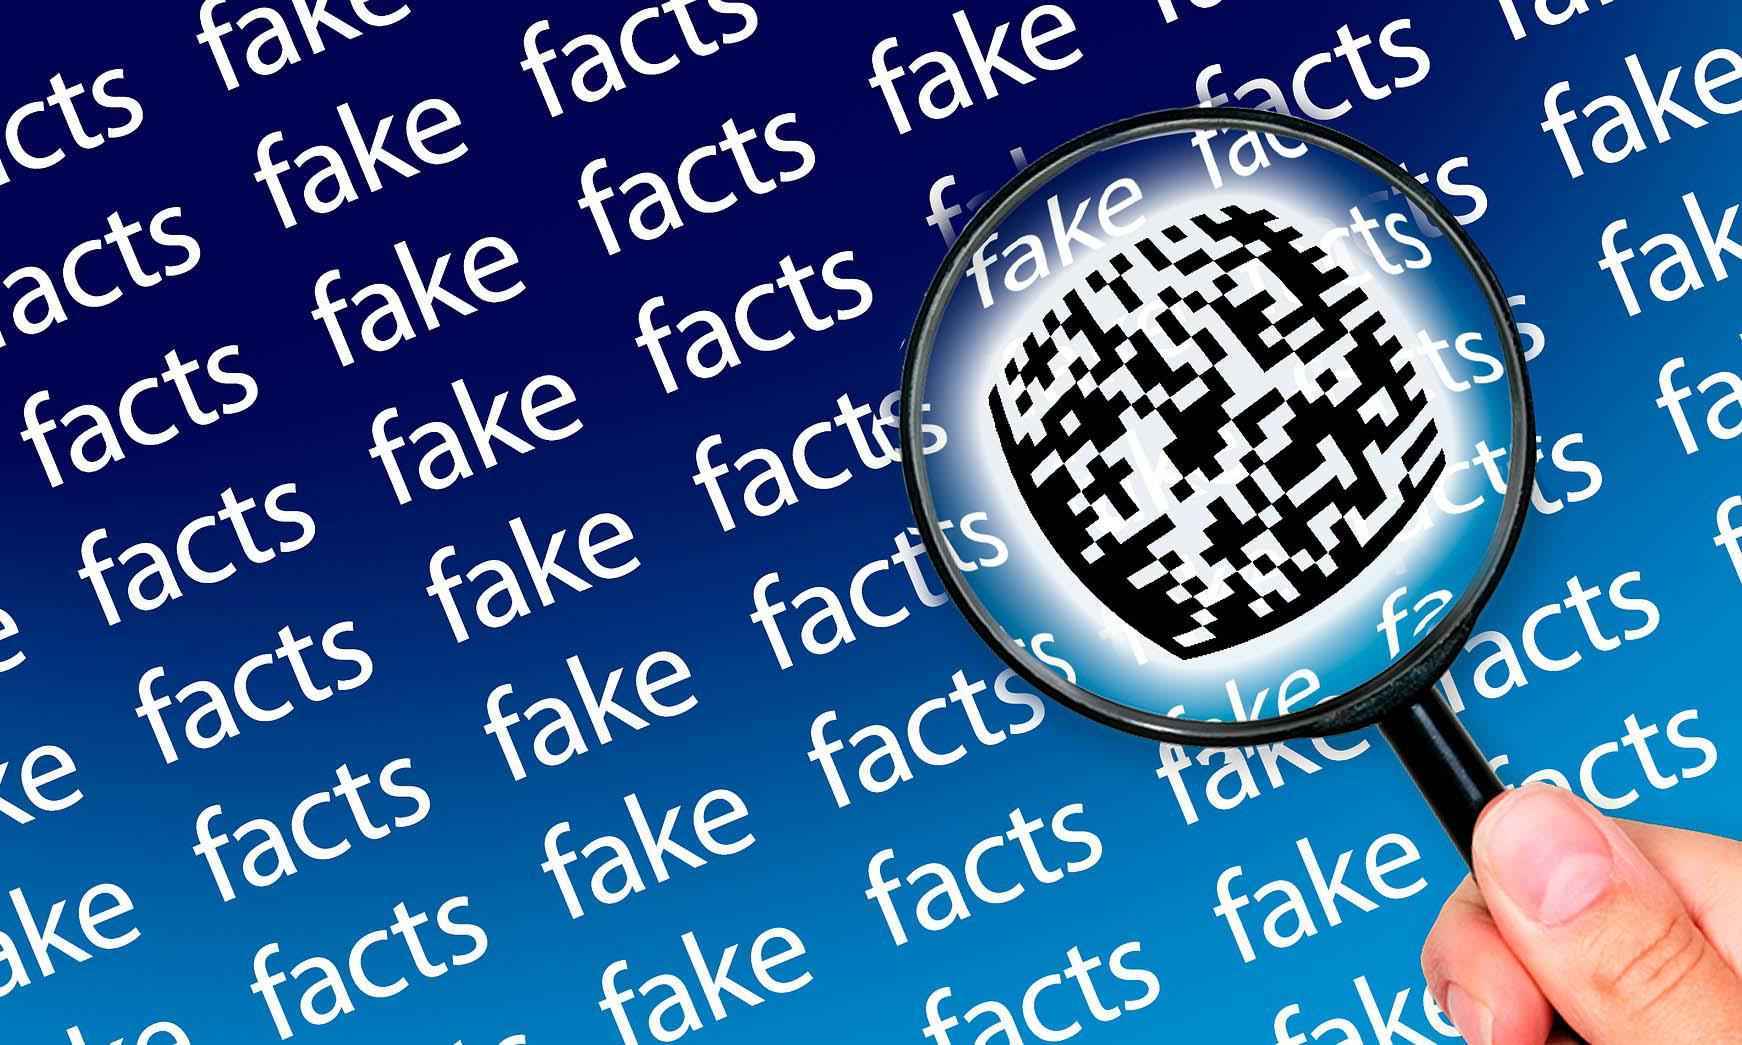 Na guerra de fake news, quem mente mais: bolsominions ou petralhas? Saiba - Pixabay/Divulgação